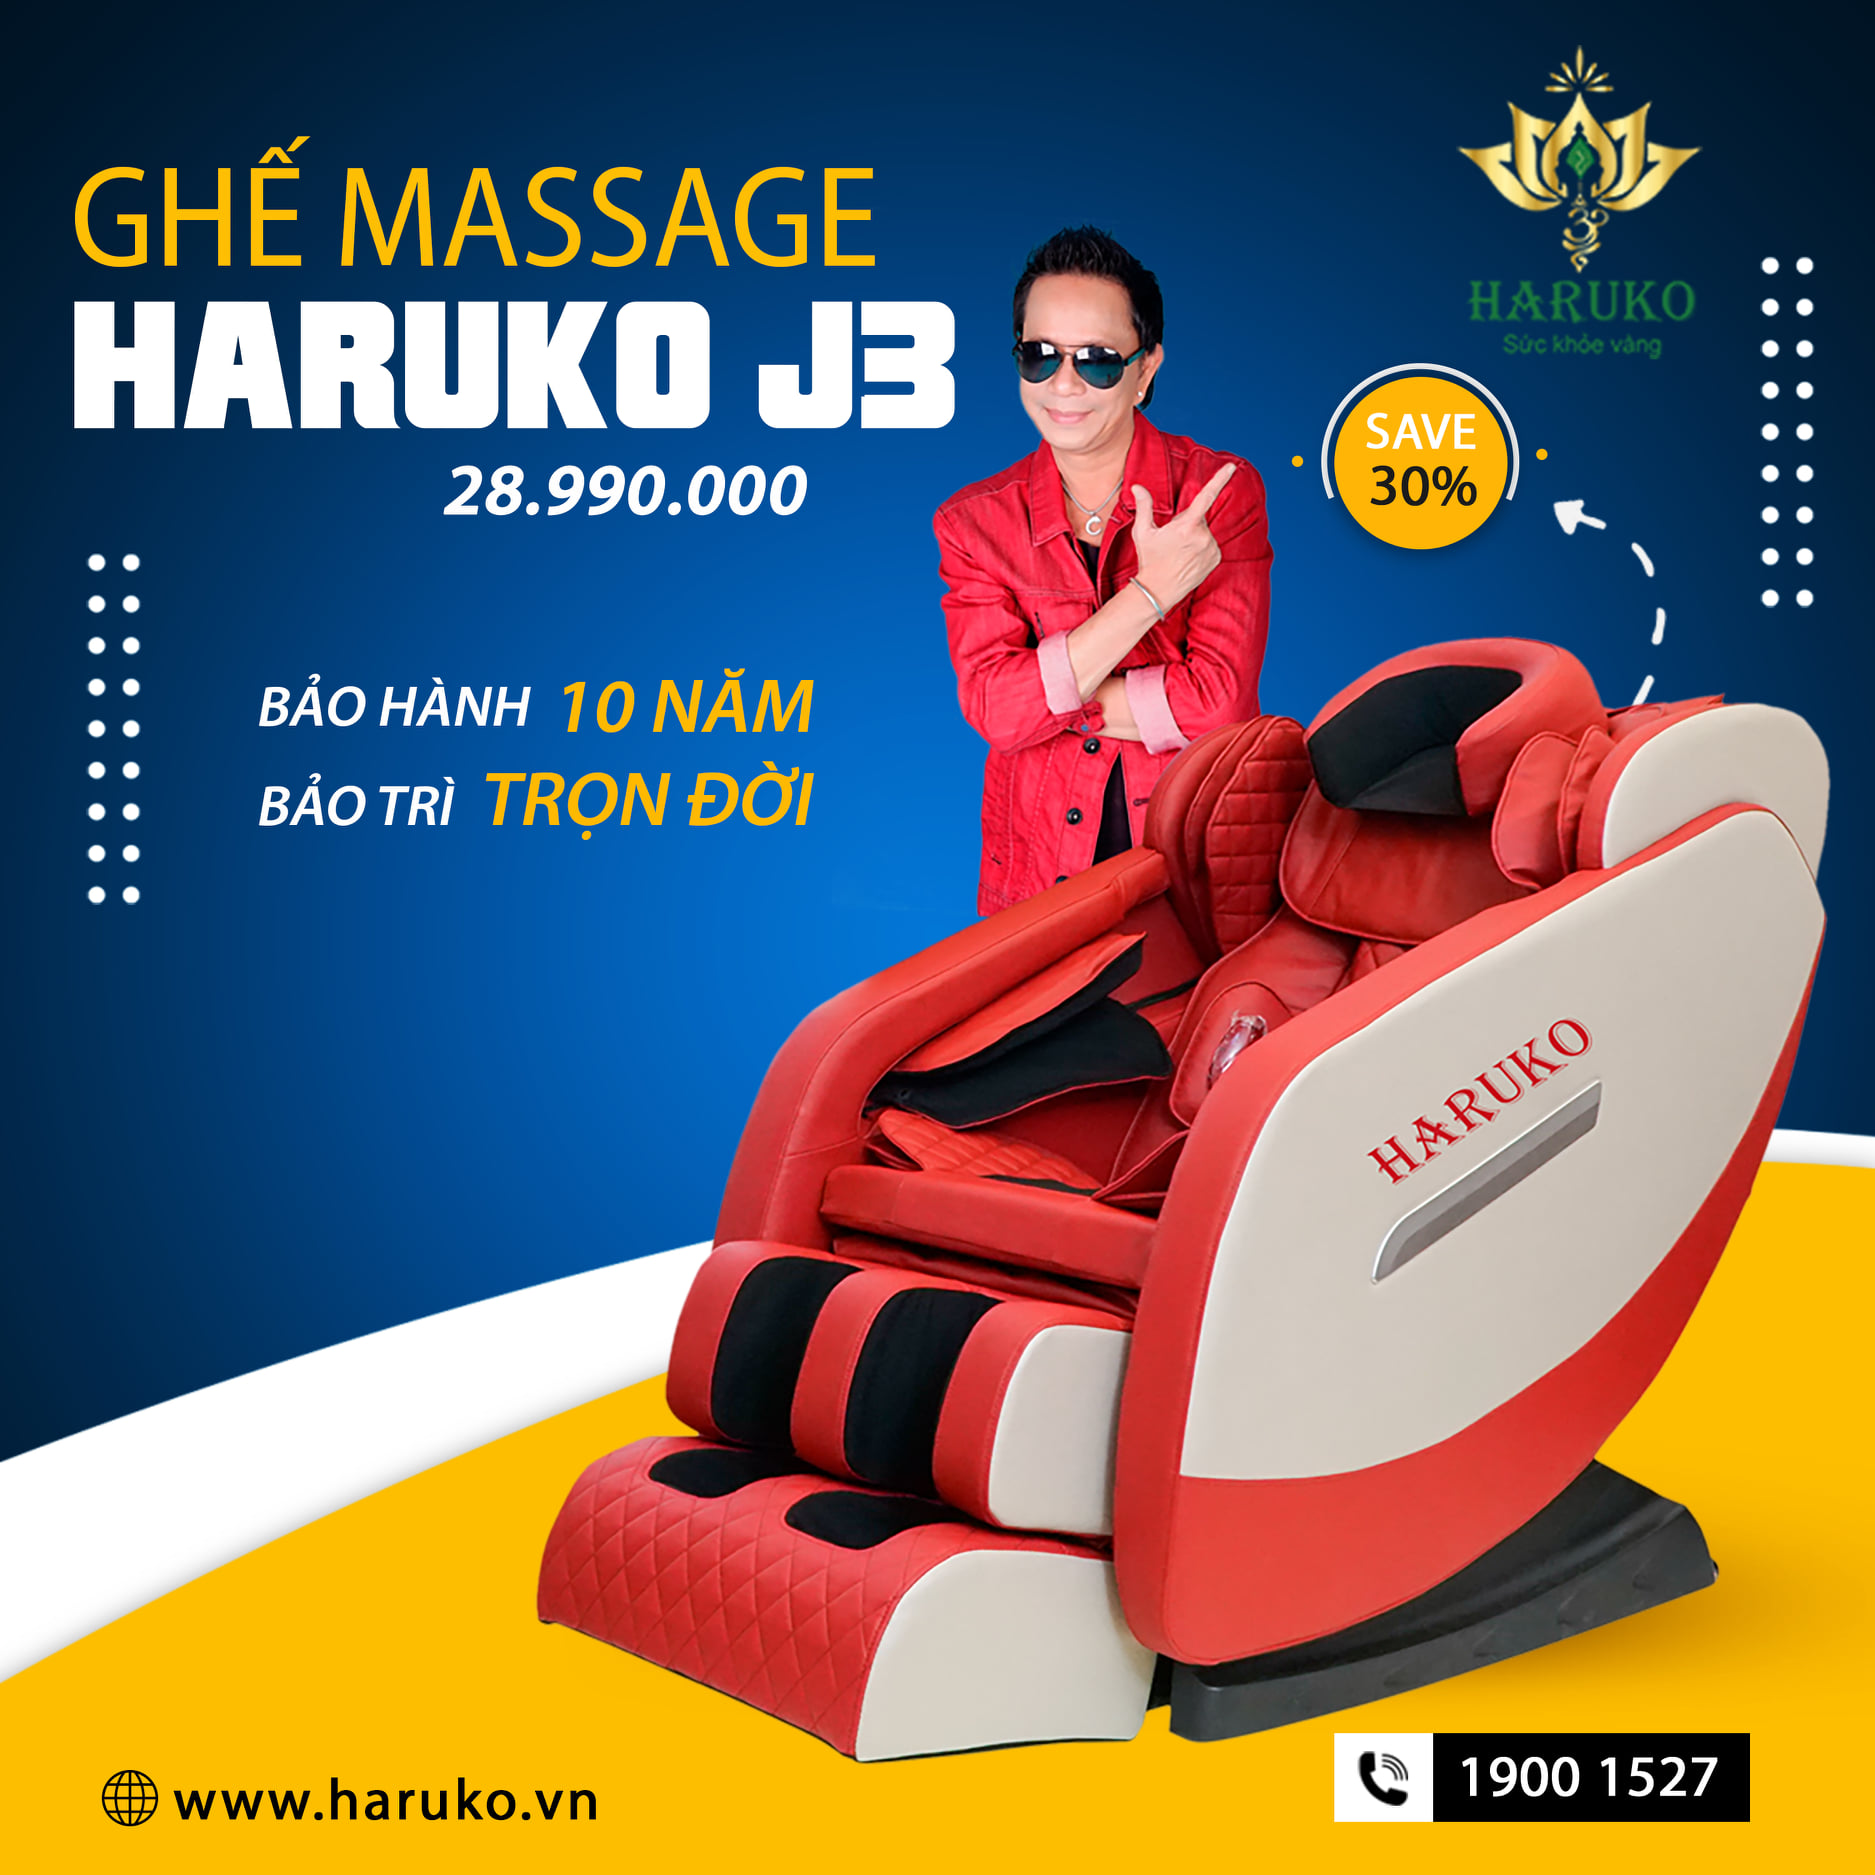 Ghế massage Haruko-J3 được khách hàng tin dùng với dịch vụ bảo hành 10 năm 